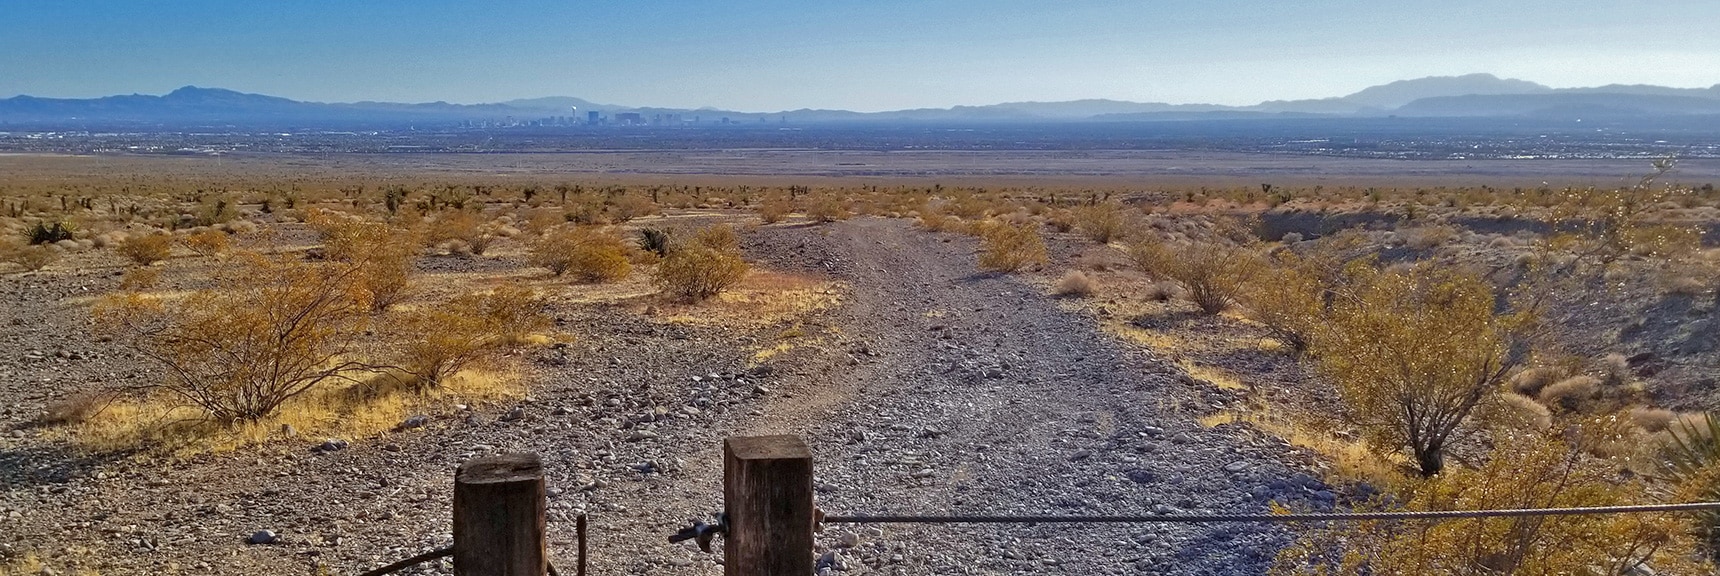 Border of Desert National Wildlife Refuge | Gass Peak Road Circuit | Desert National Wildlife Refuge | Nevada